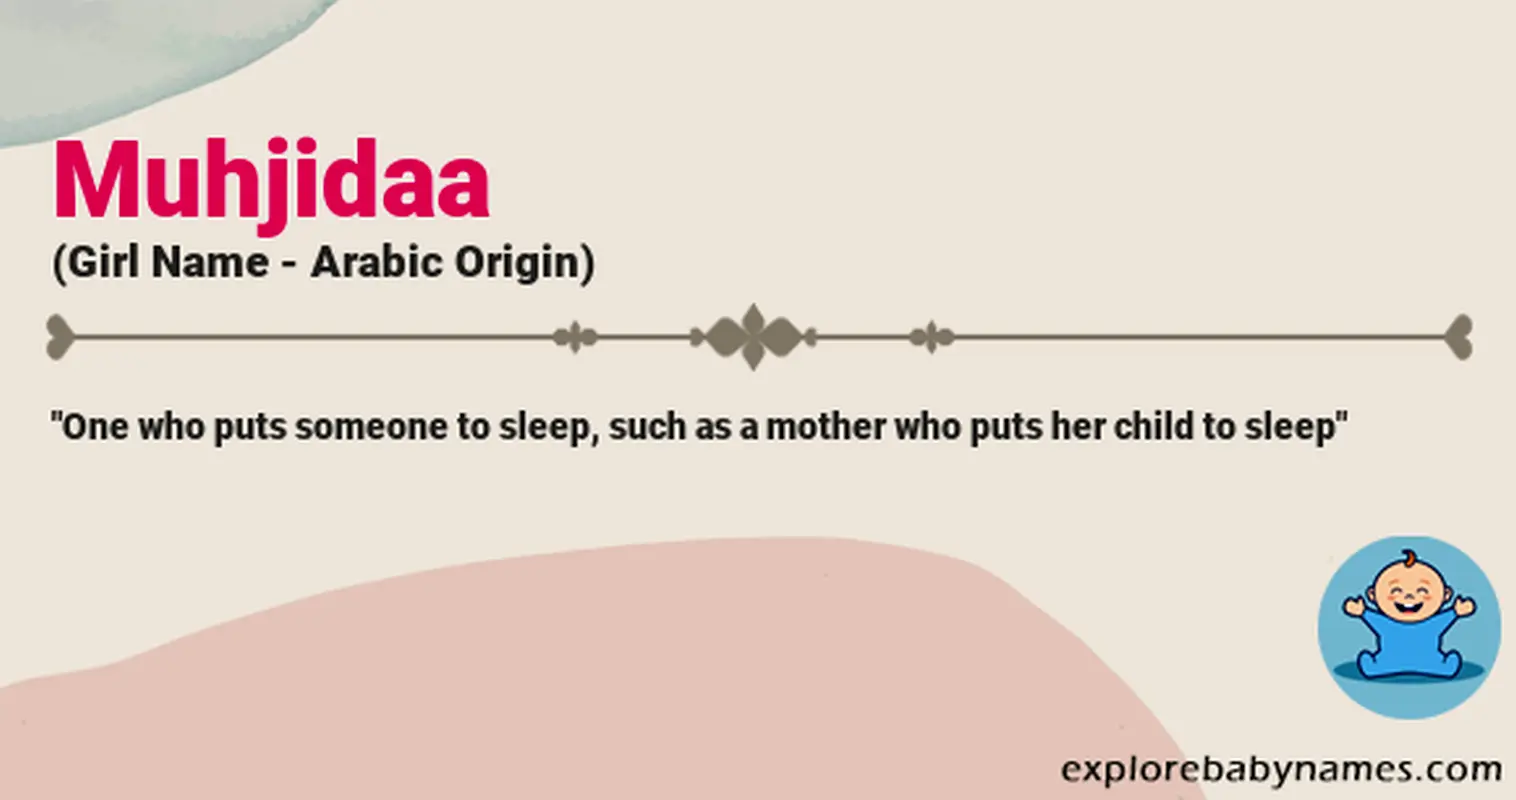 Meaning of Muhjidaa